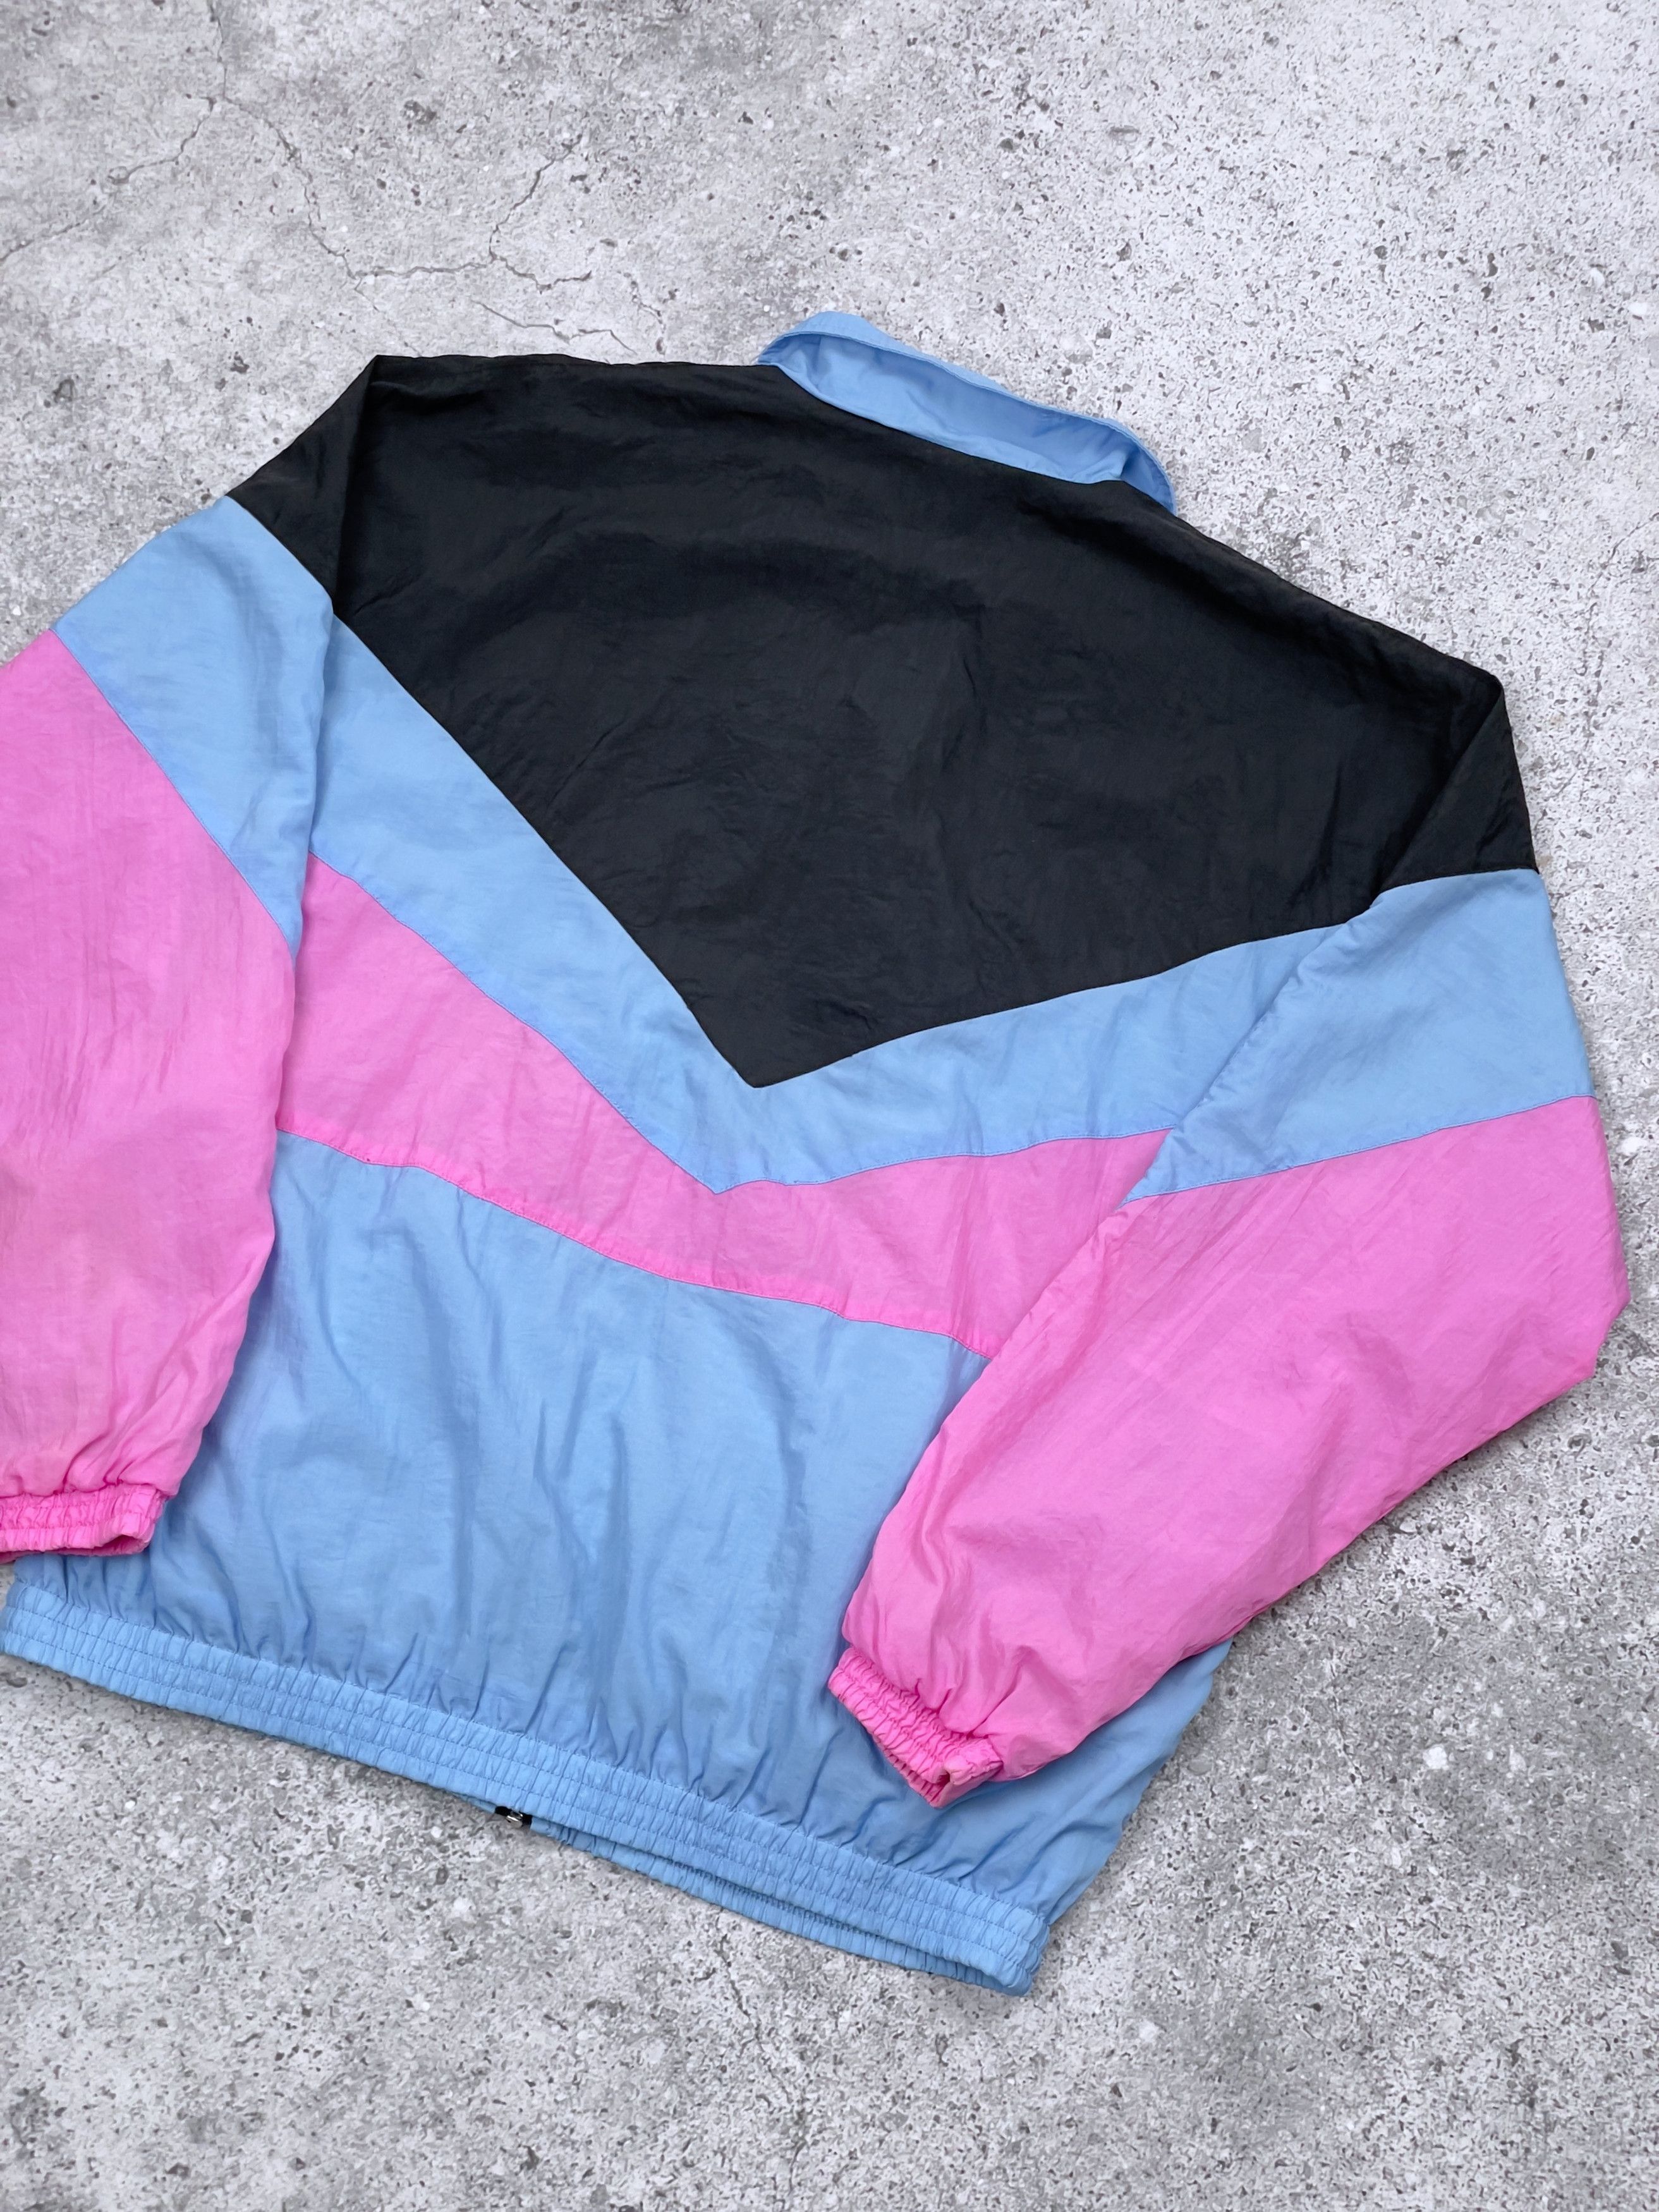 Vintage 80s Reebok Nylon Track Jacket Set Jacket + Pants Size US M / EU 48-50 / 2 - 11 Thumbnail